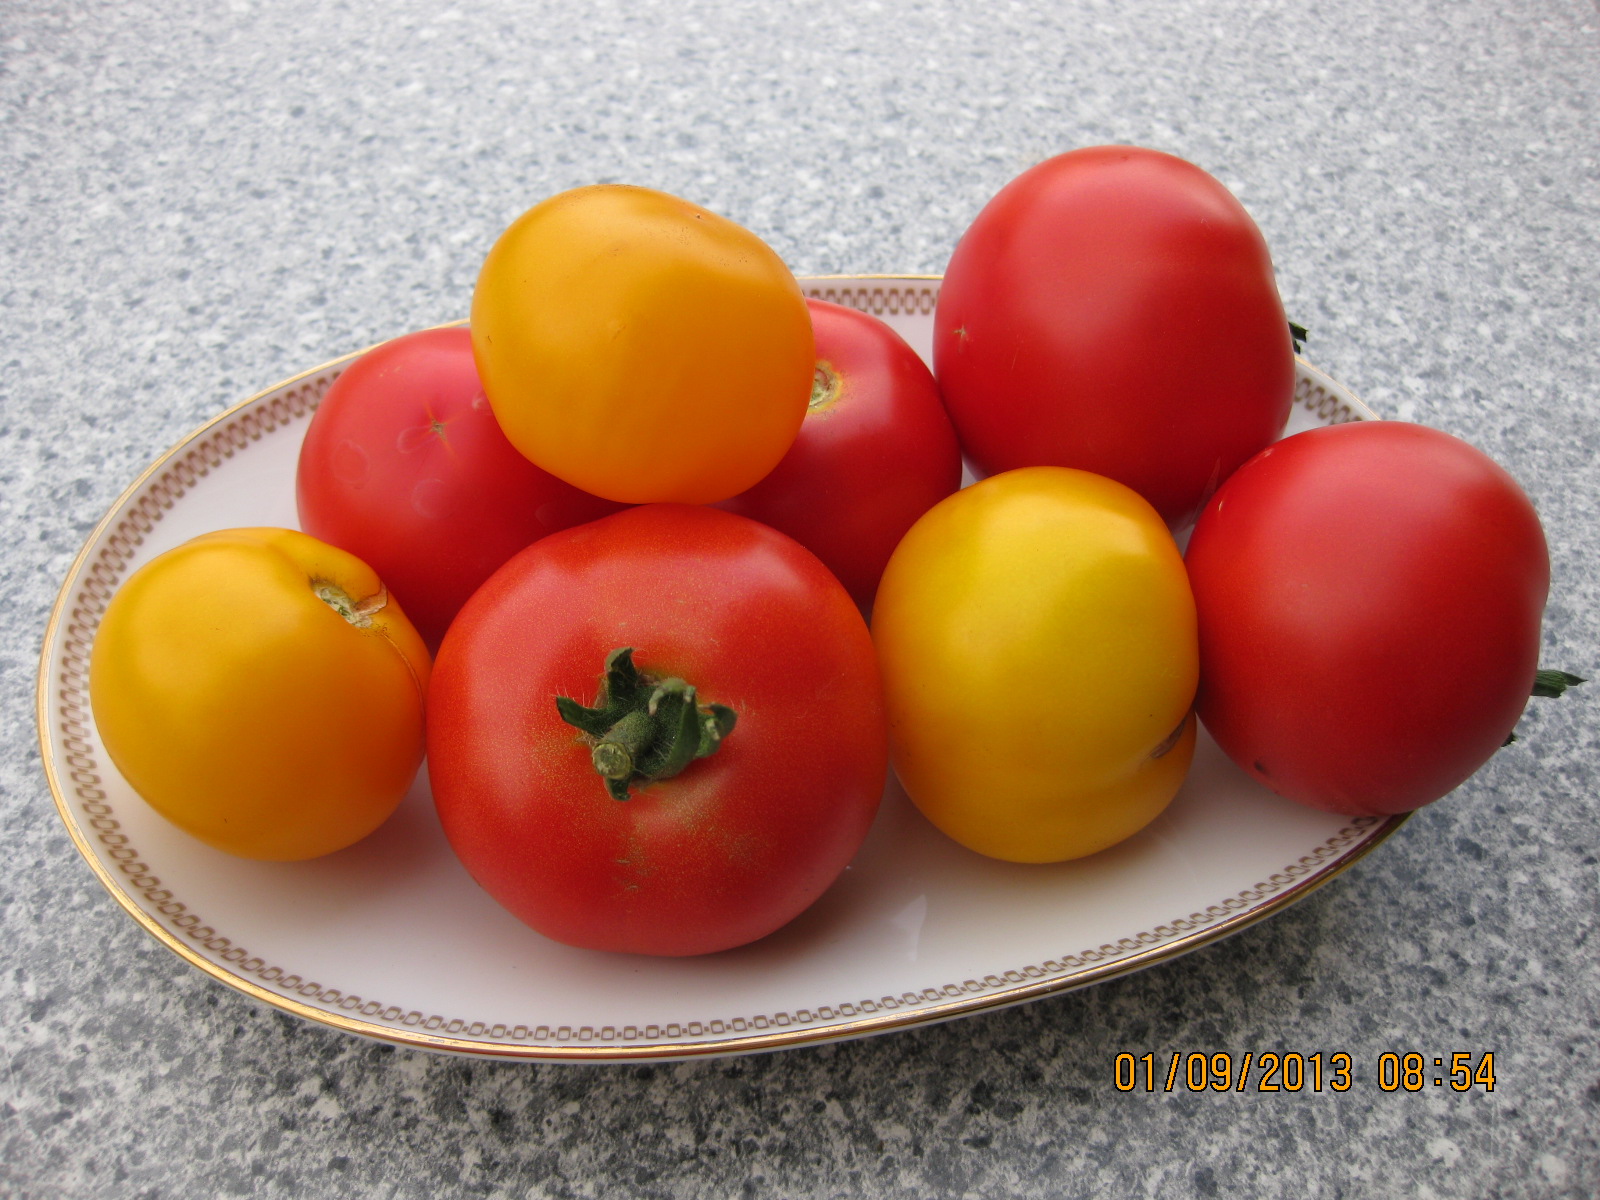 Salata de tomate cu mozzarella